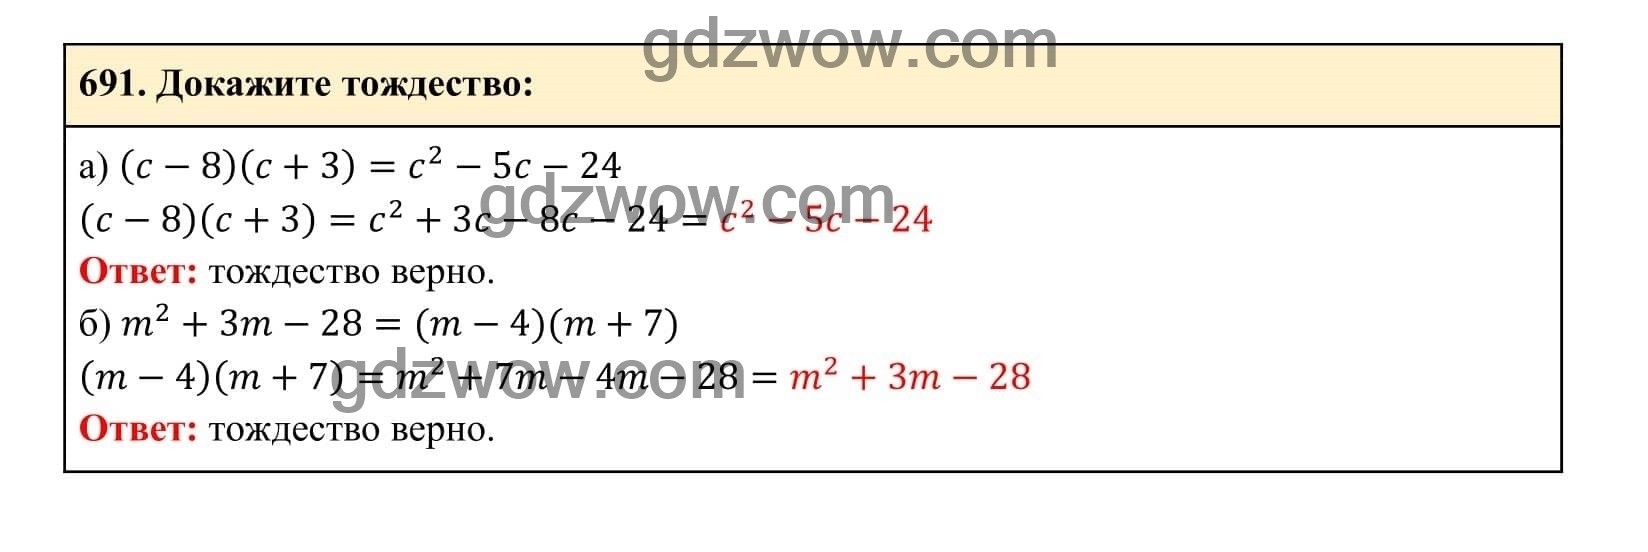 Упражнение 691 - ГДЗ по Алгебре 7 класс Учебник Макарычев (решебник) - GDZwow